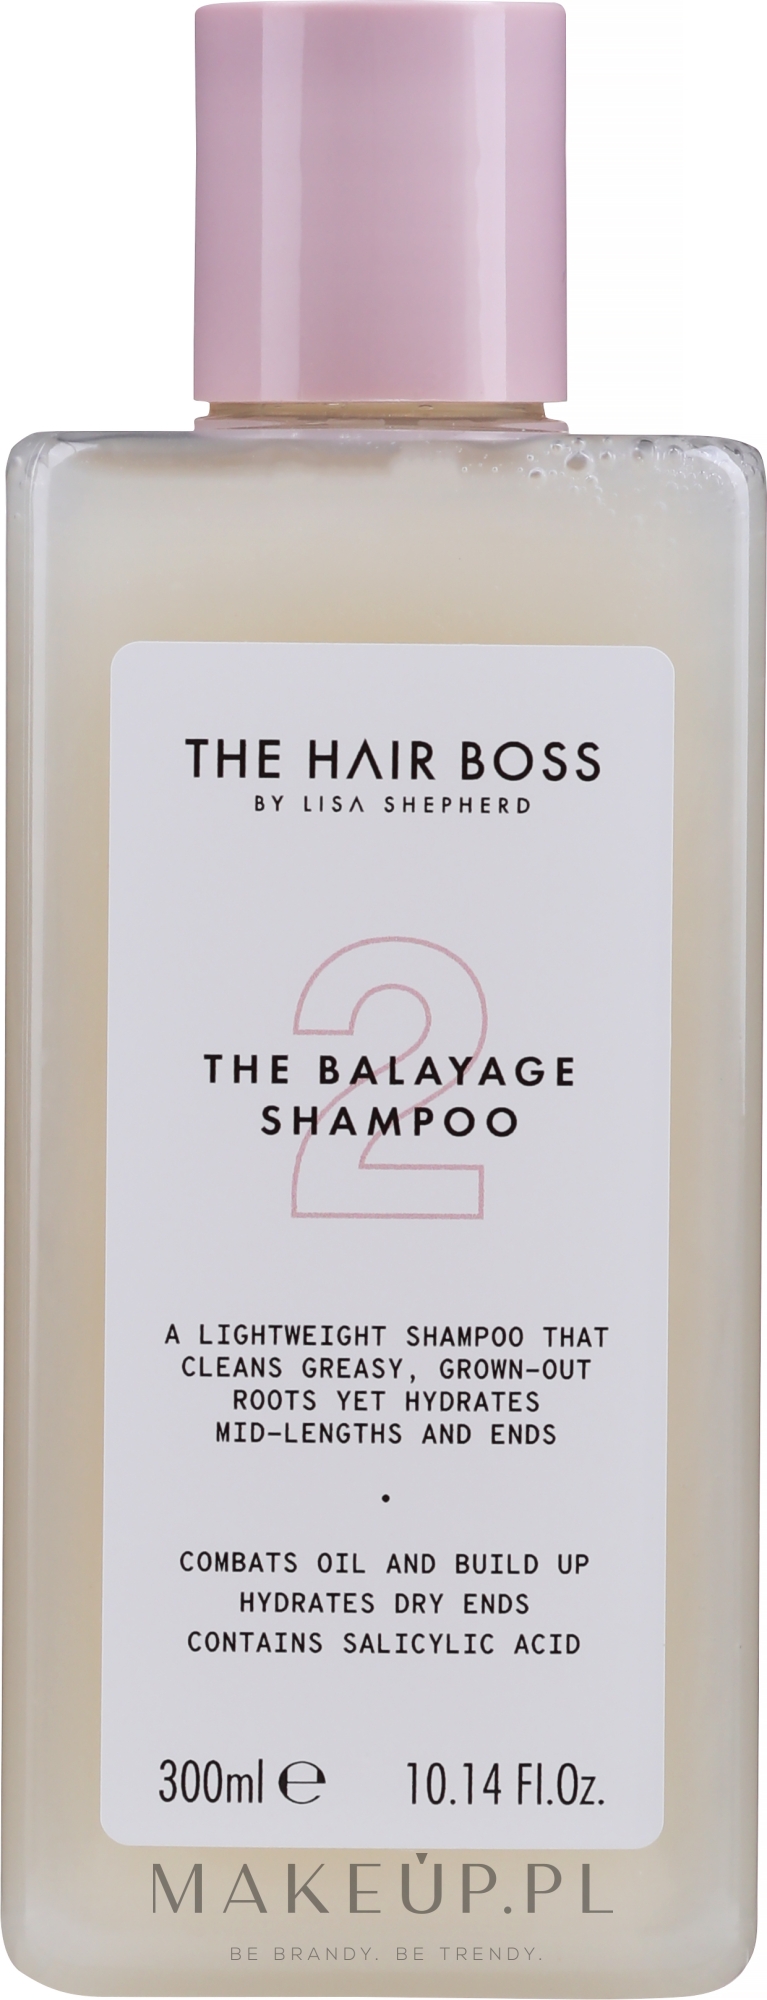 szampon do włosów z balejażem